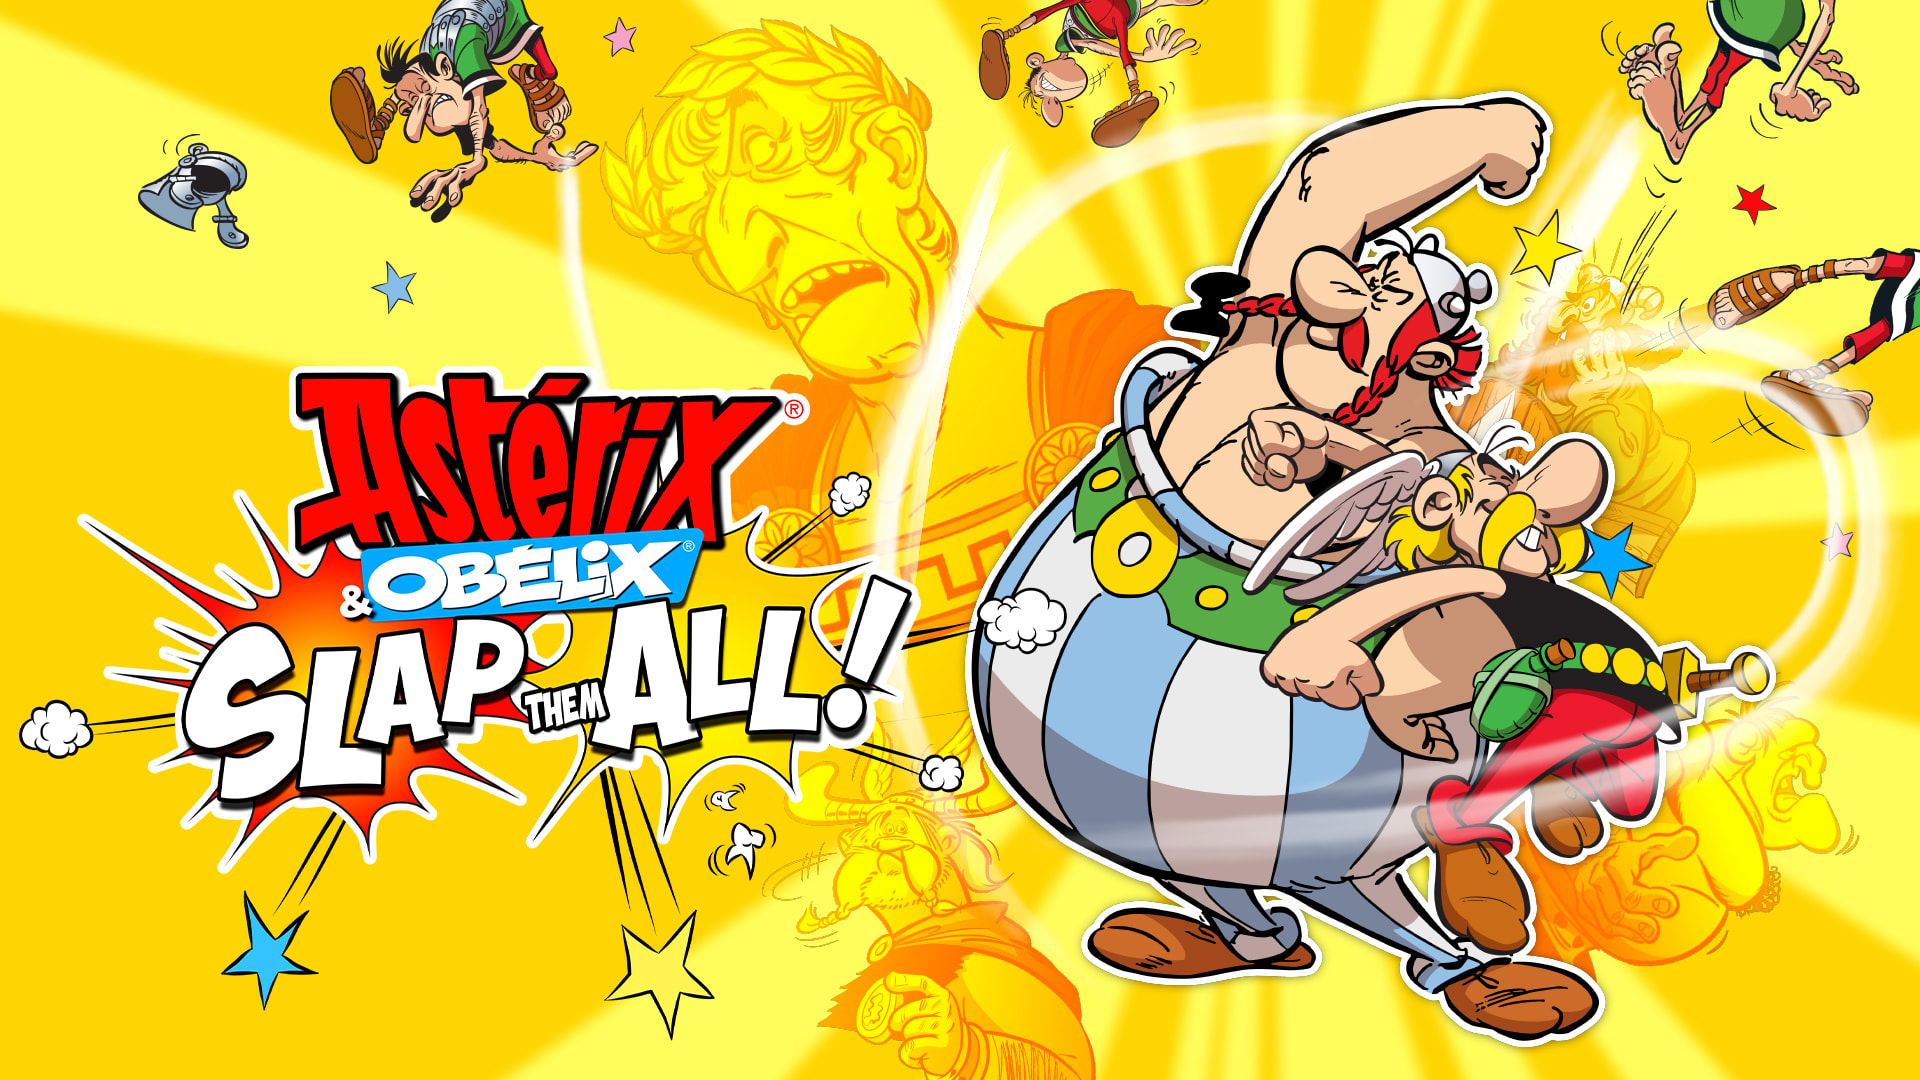 Astérix & Obelix: Slap them All!